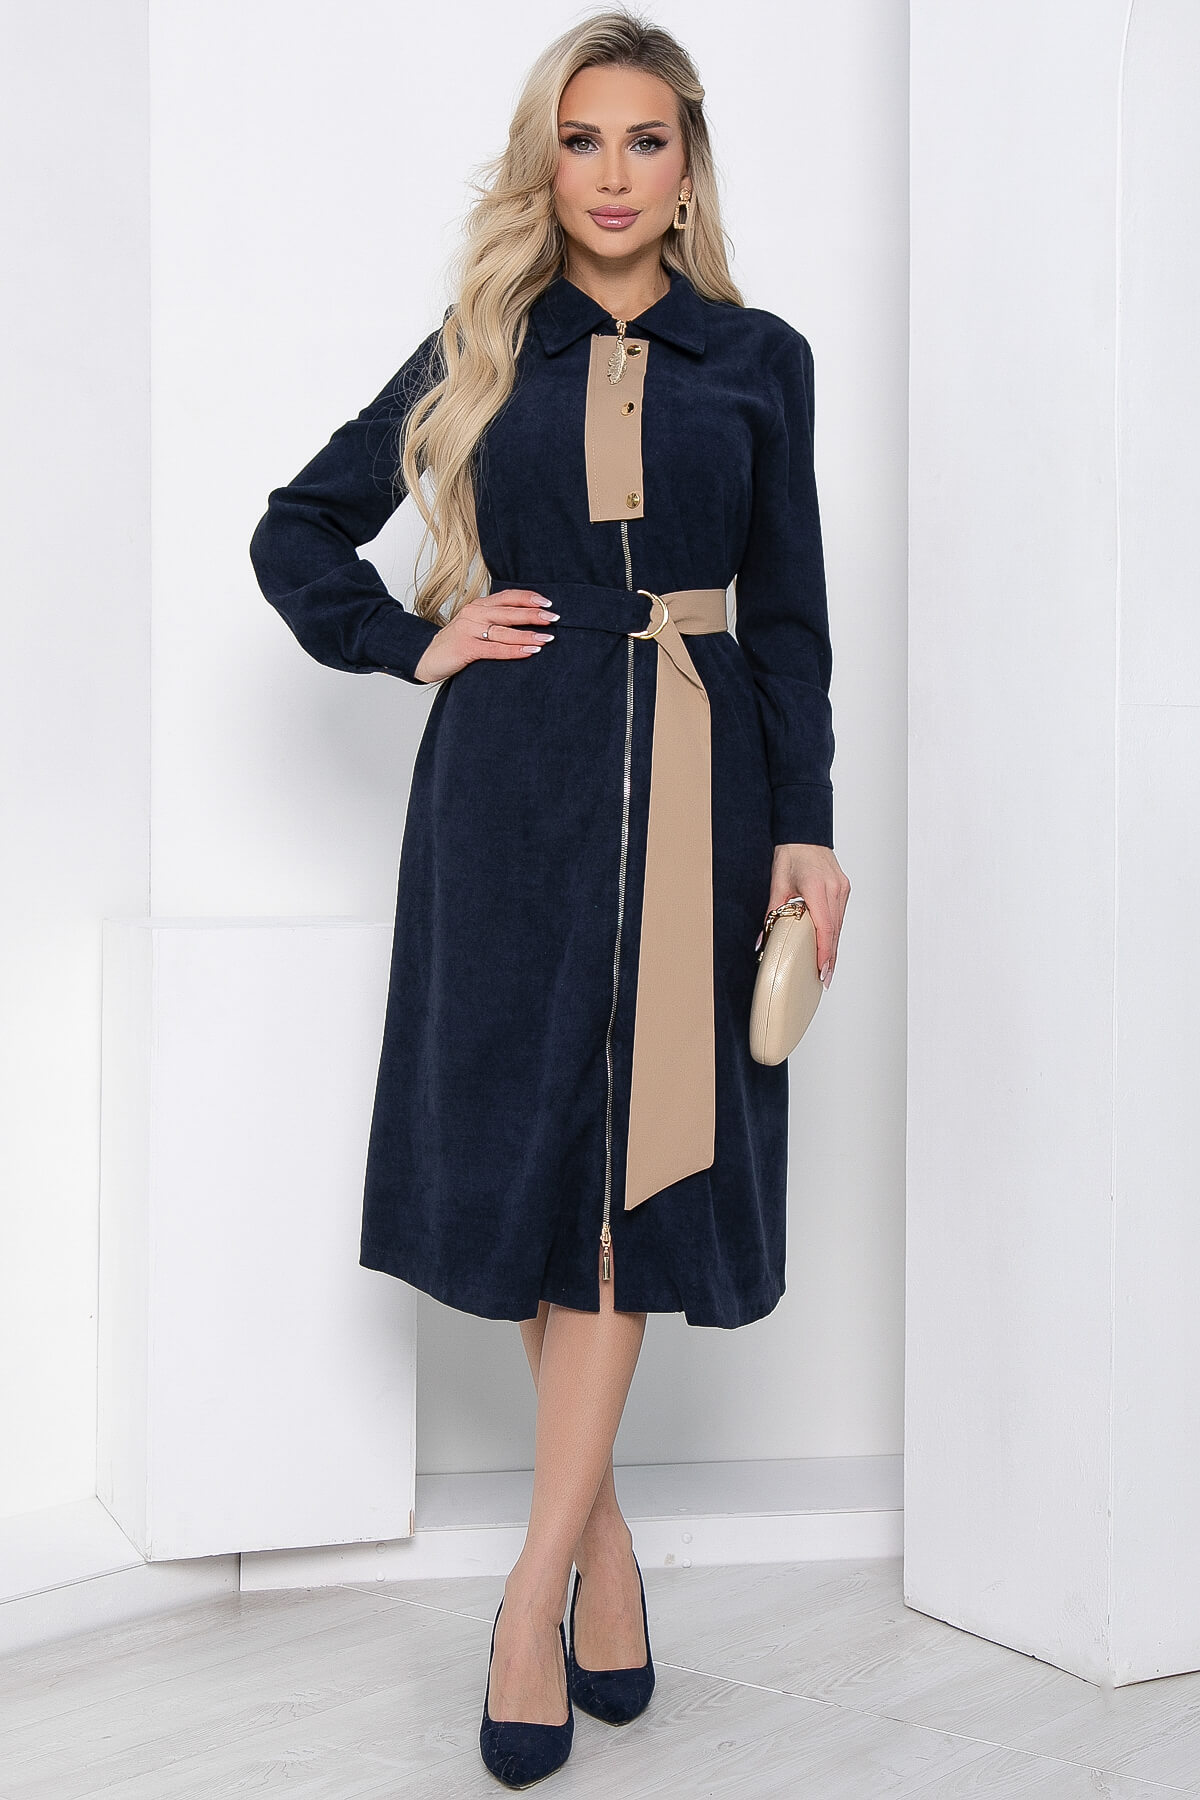 Платье женское LT Collection Чувство стиля синее 48 RU